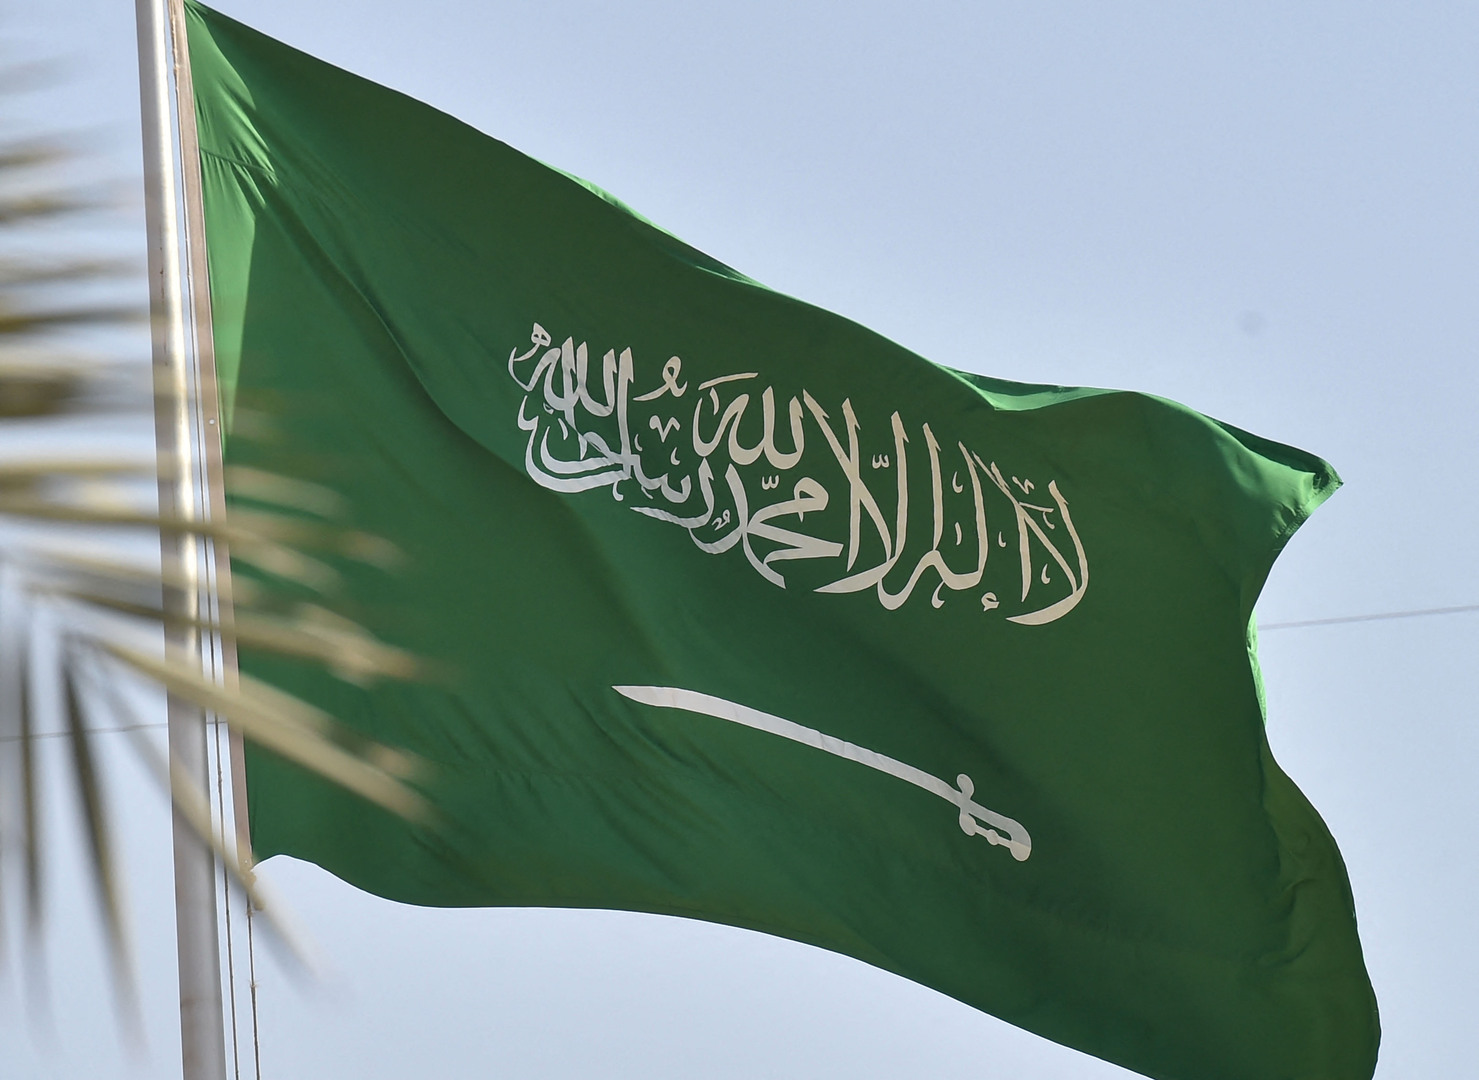 السعودية تعلن توقيع اتفاقيات بقيمة 8 مليارات ريال بمجال الصناعات العسكرية